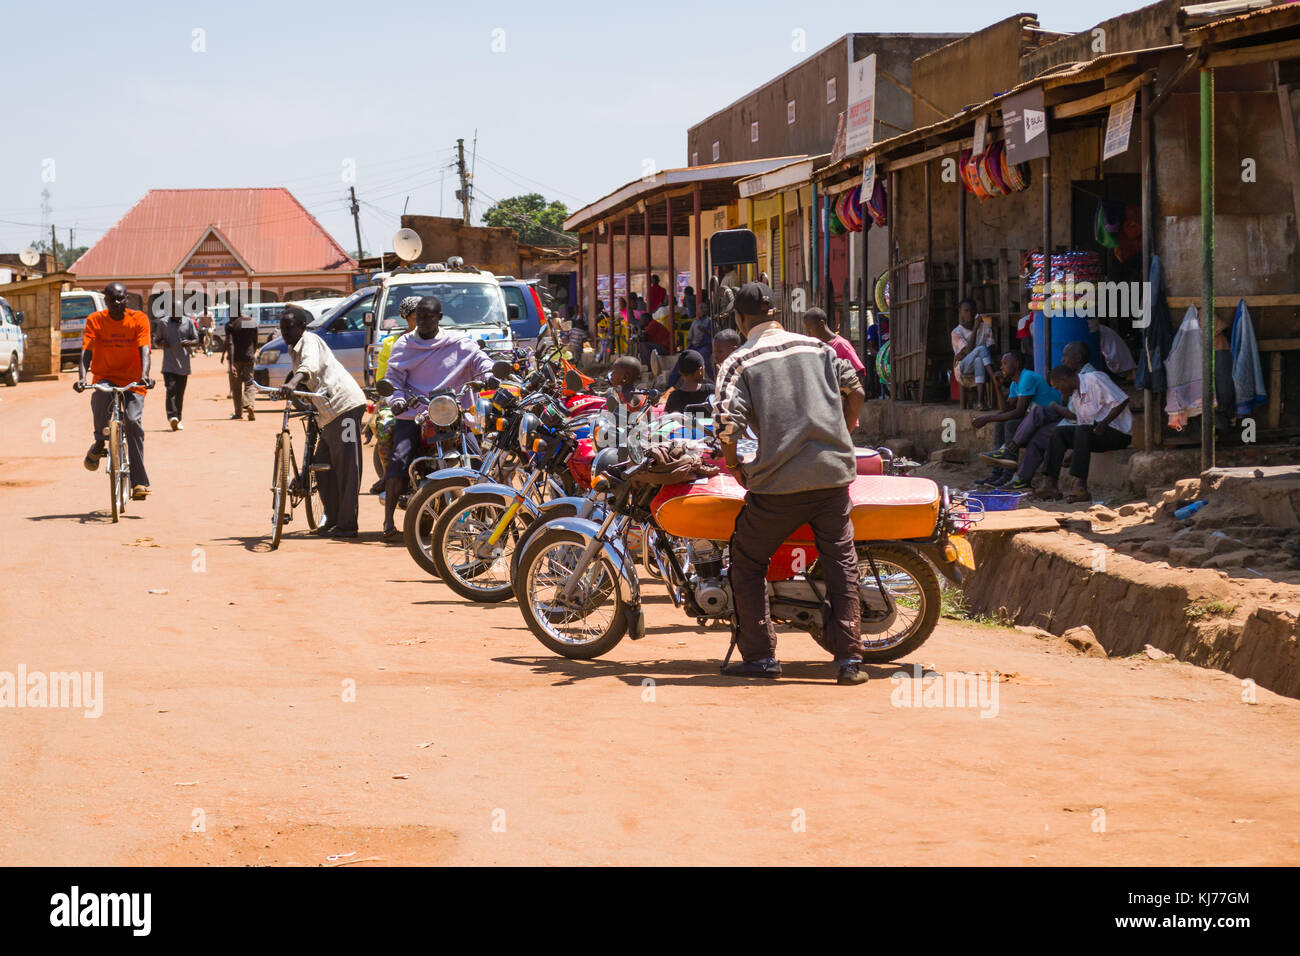 Varios boda boda mototaxis alinearon estacionado en una carretera polvorienta con personas caminando en una ciudad, Busia, Uganda, África Oriental Foto de stock